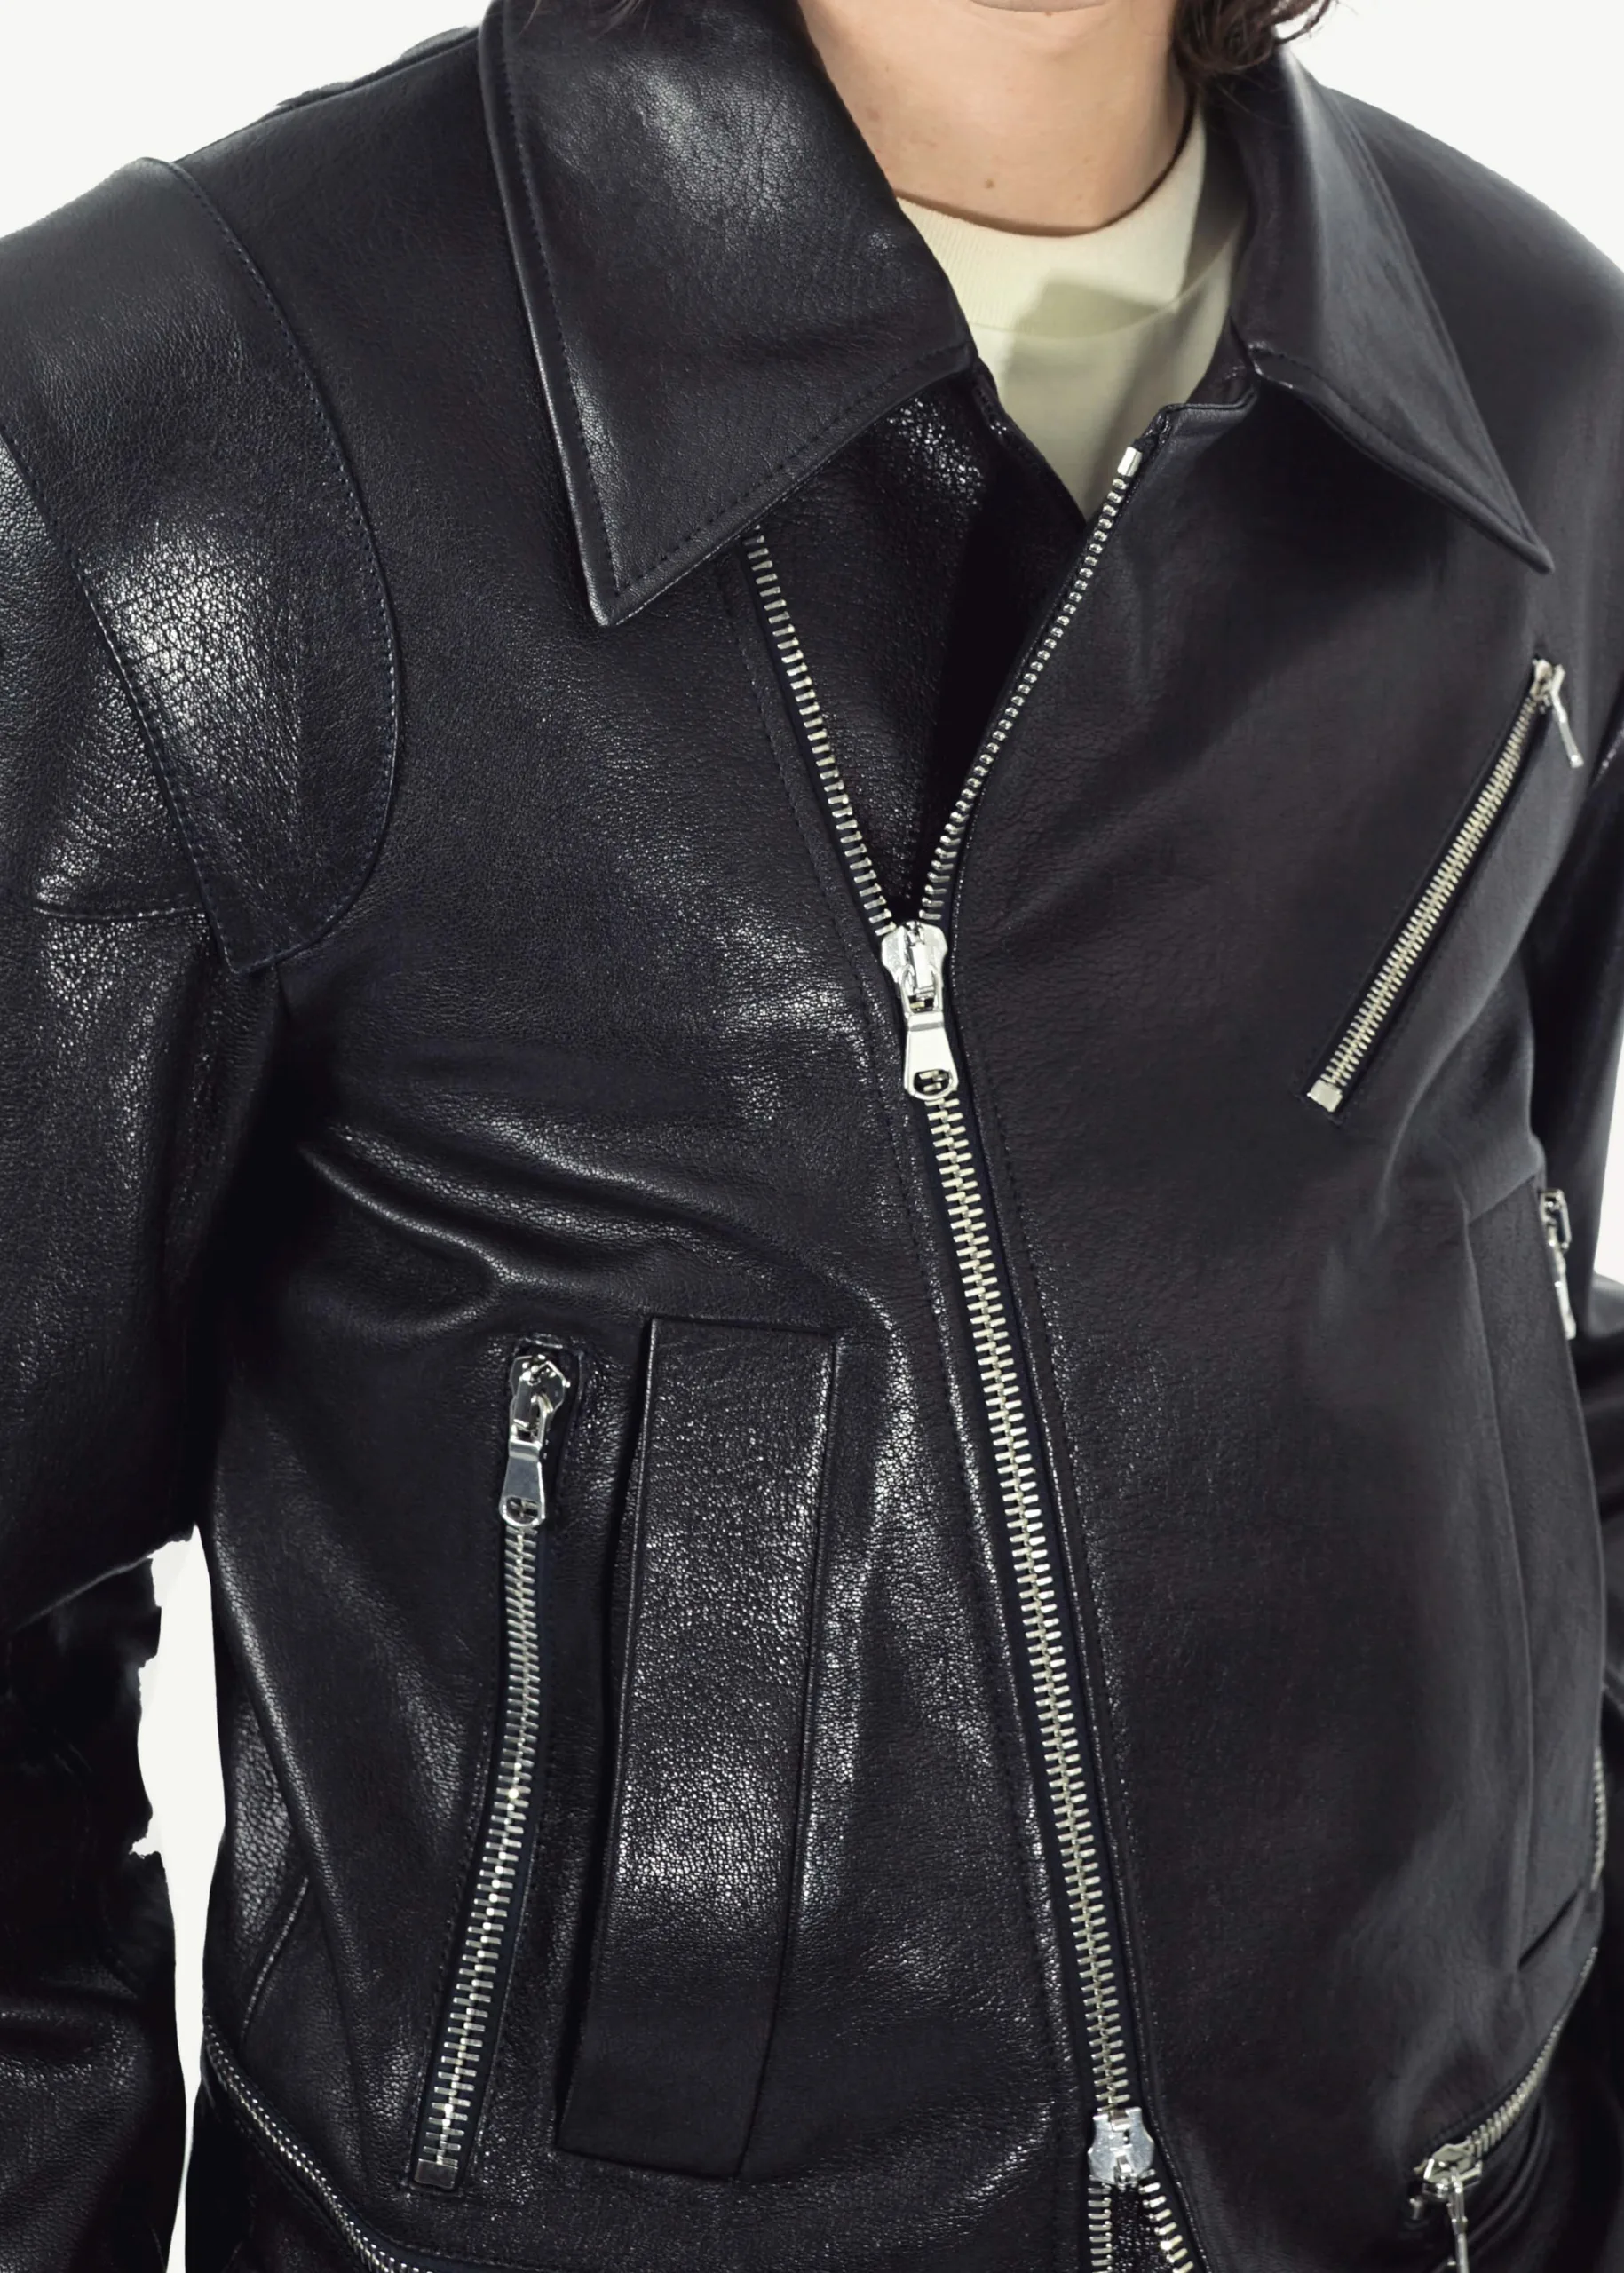 Namacheko SS23 Sine Leather Jacket 13 100 scaled